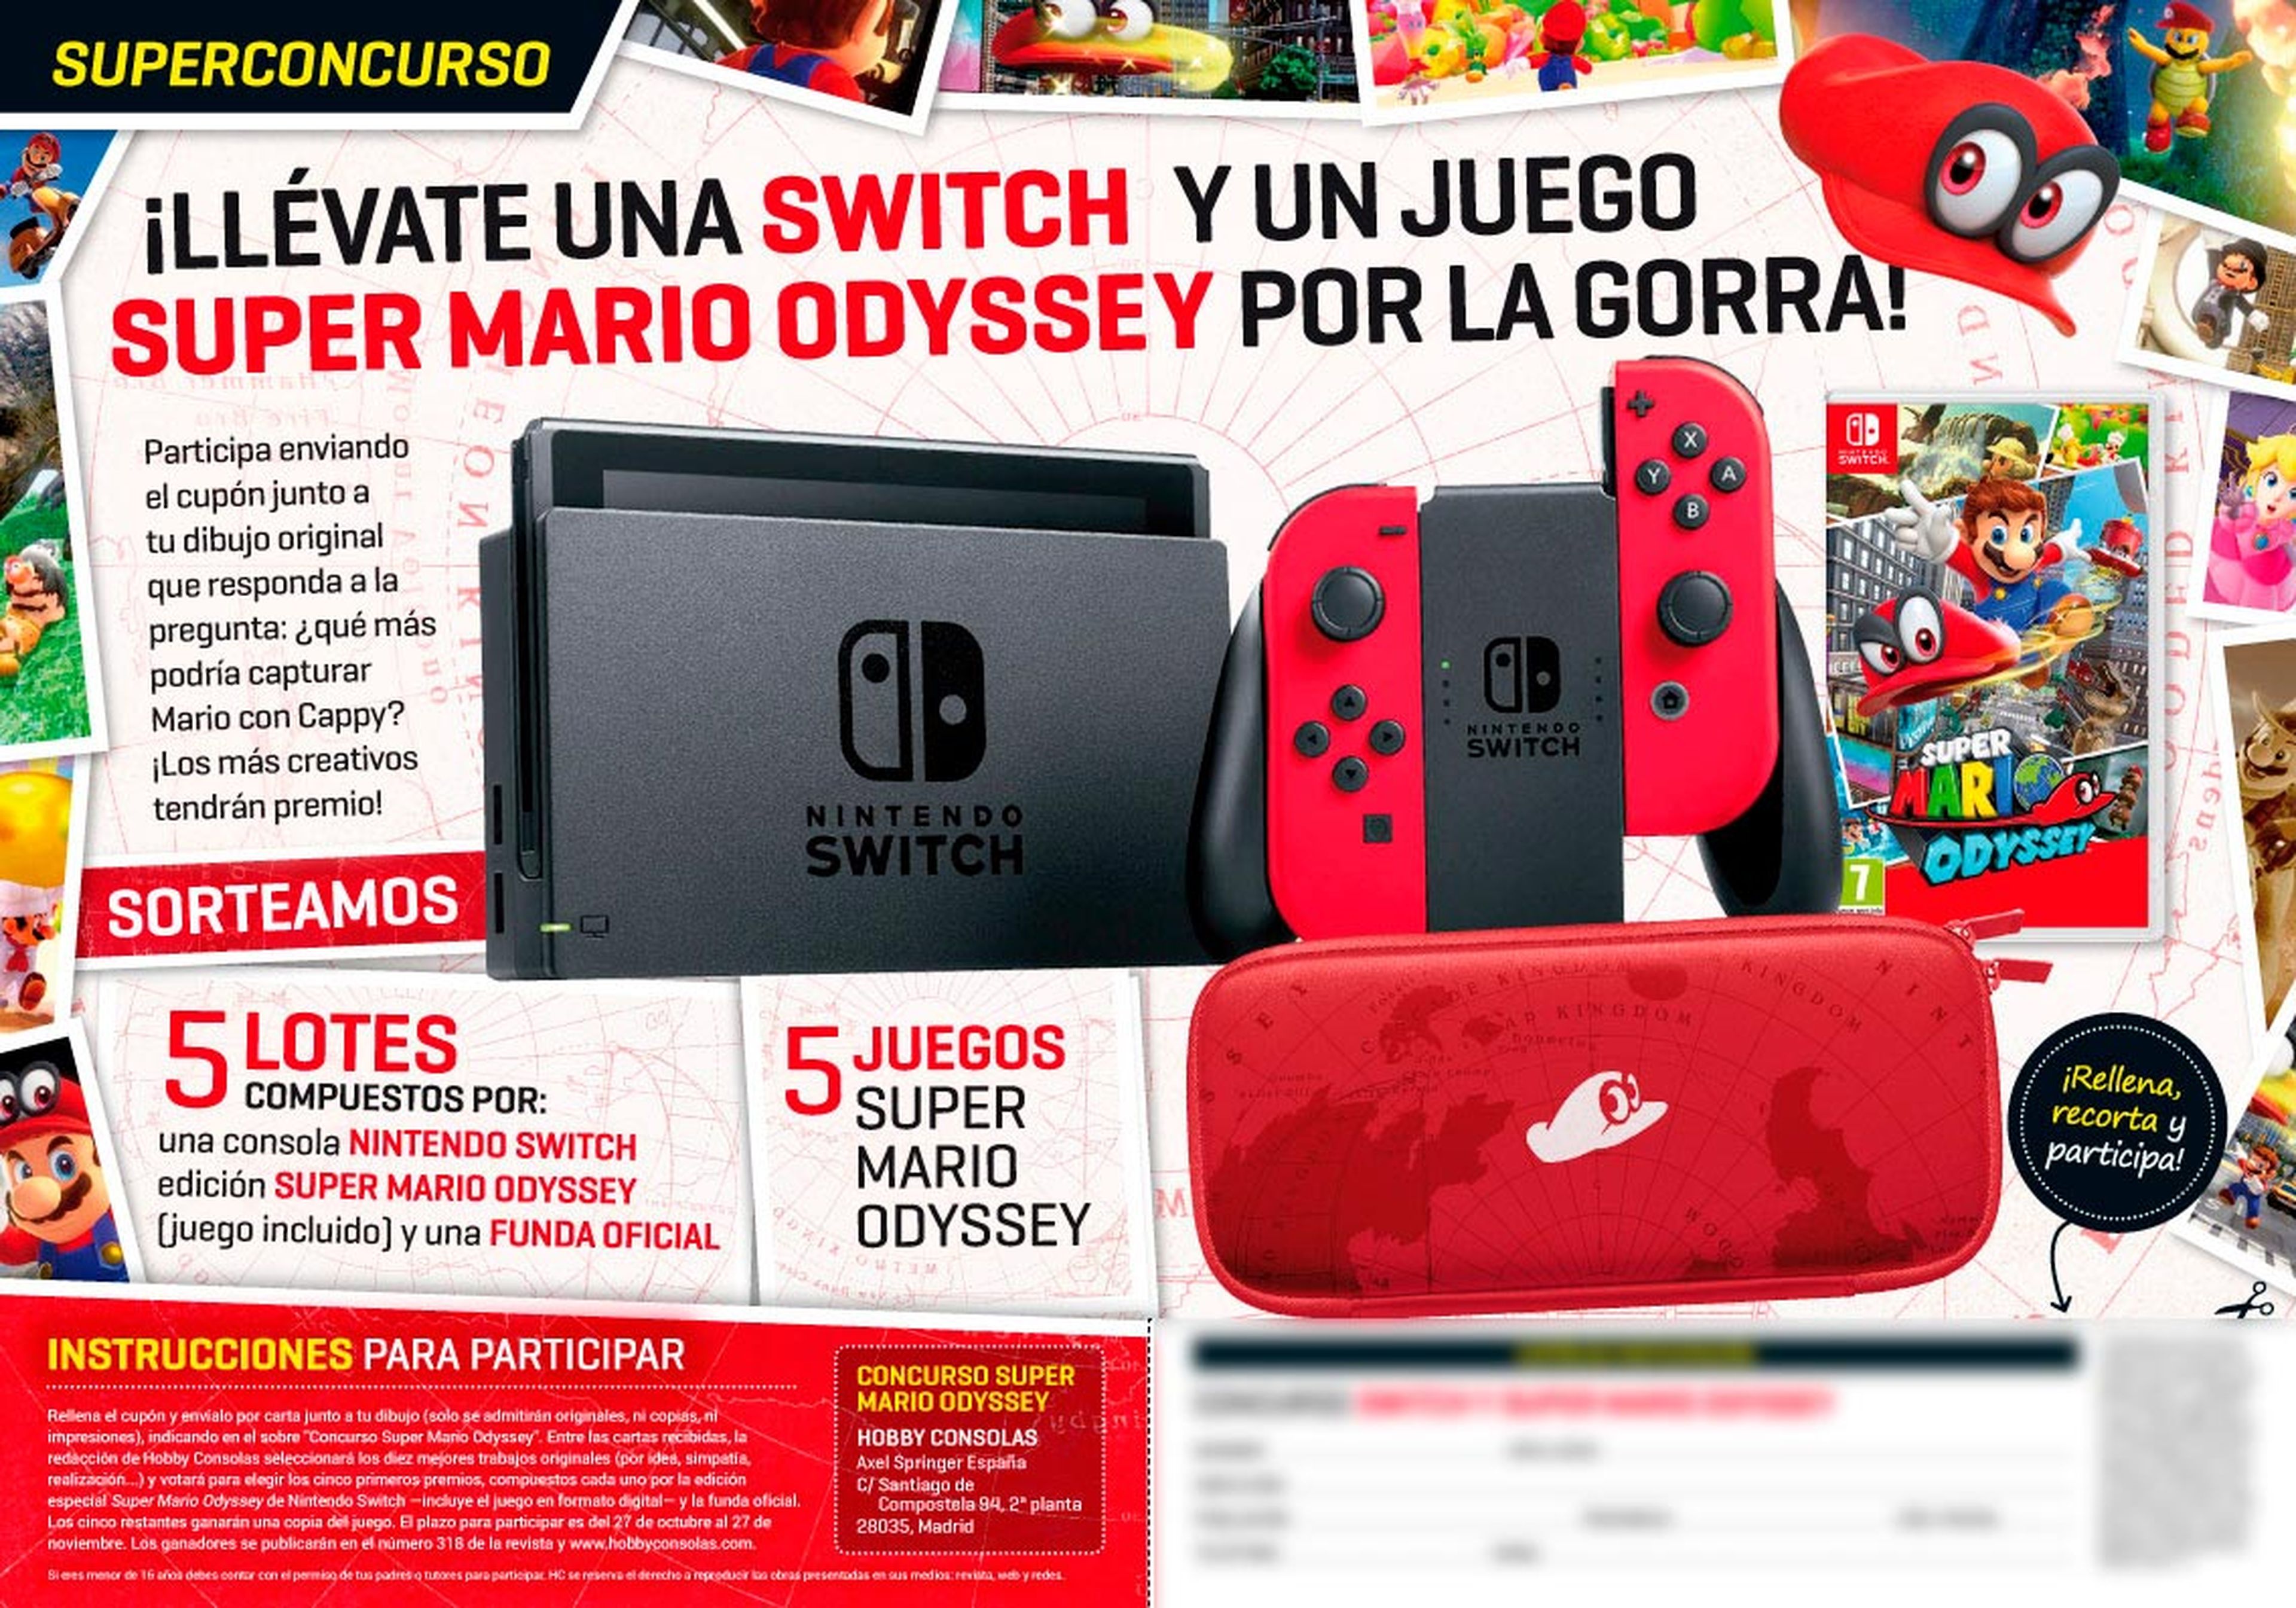 Hobby Consolas 316, a la venta: ¡Regalamos cinco Switch Edición Super Mario Odyssey y cinco juegos!